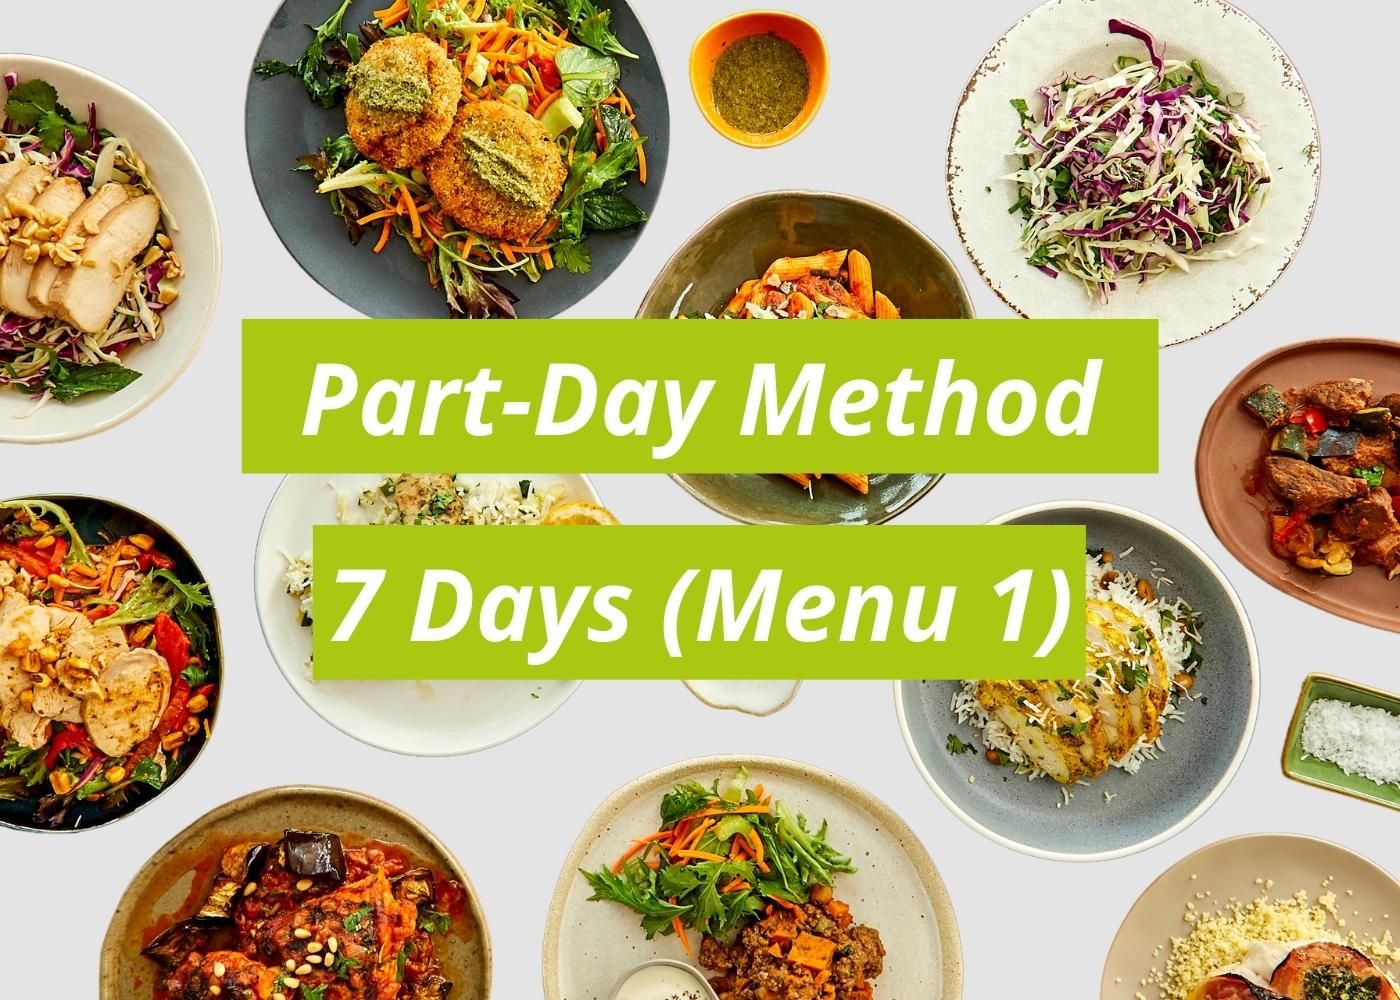 SFD - Part-Day Method - 7 Day Plan - menu 1